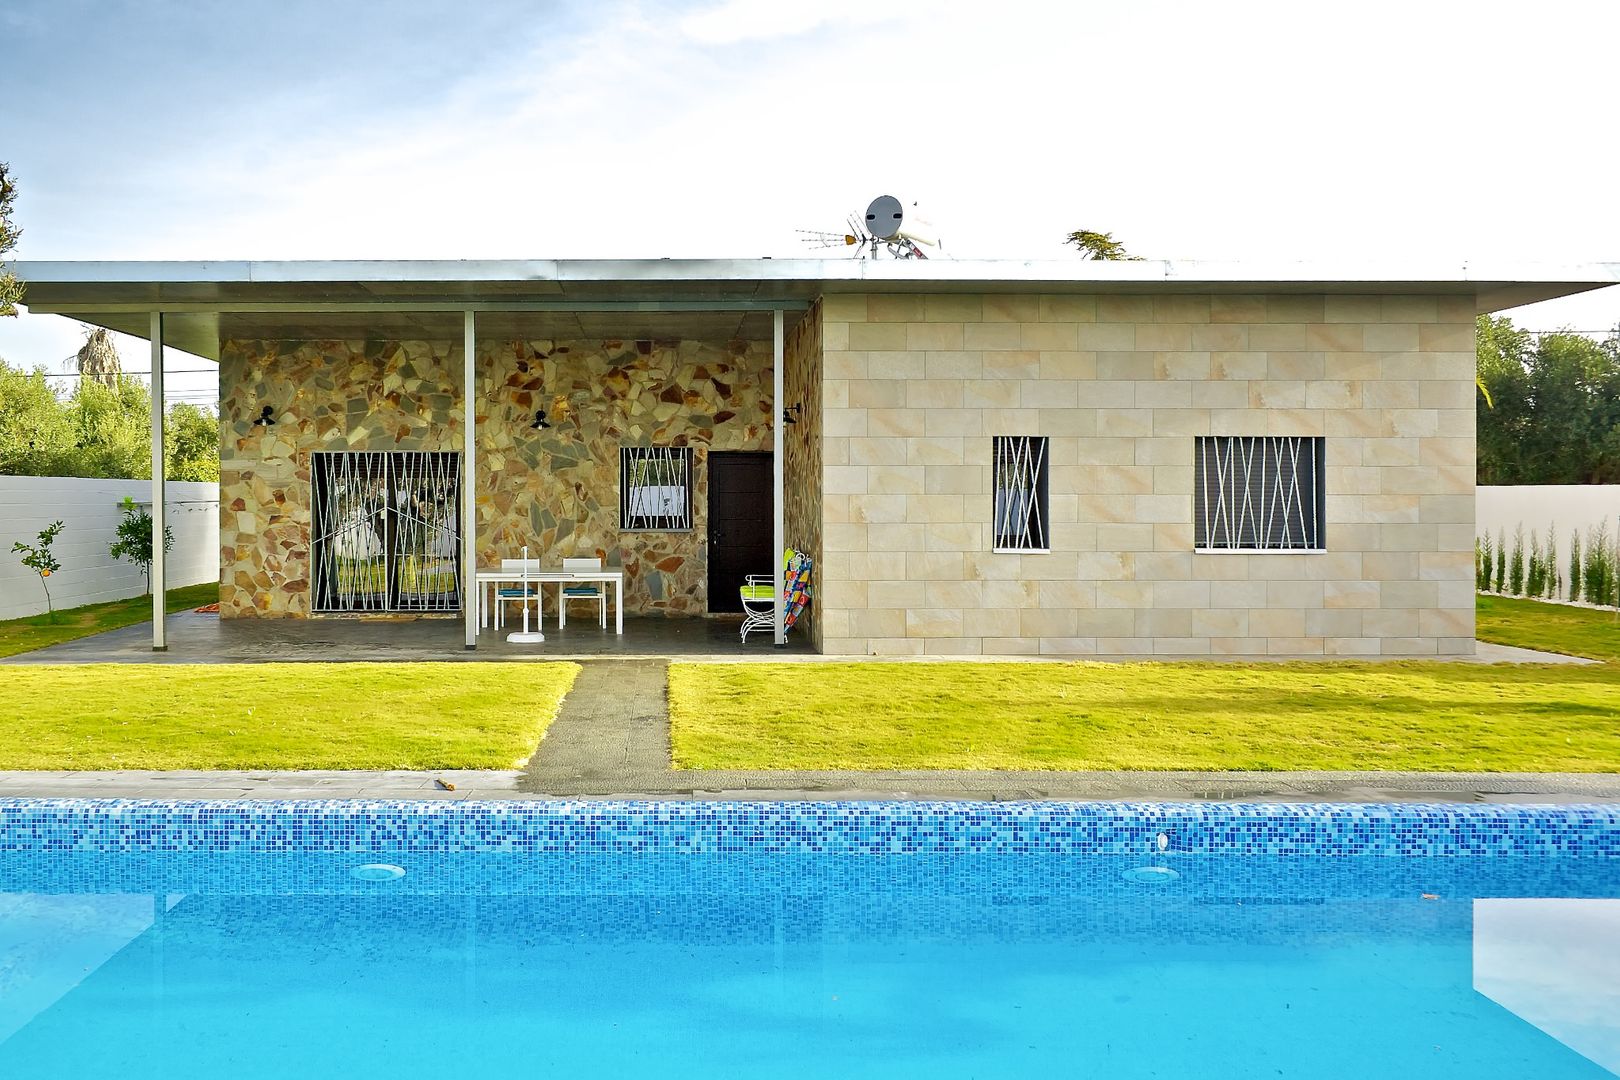 Jardín trasero y piscina Sánchez-Matamoros | Arquitecto Jardines de estilo moderno Cerámico